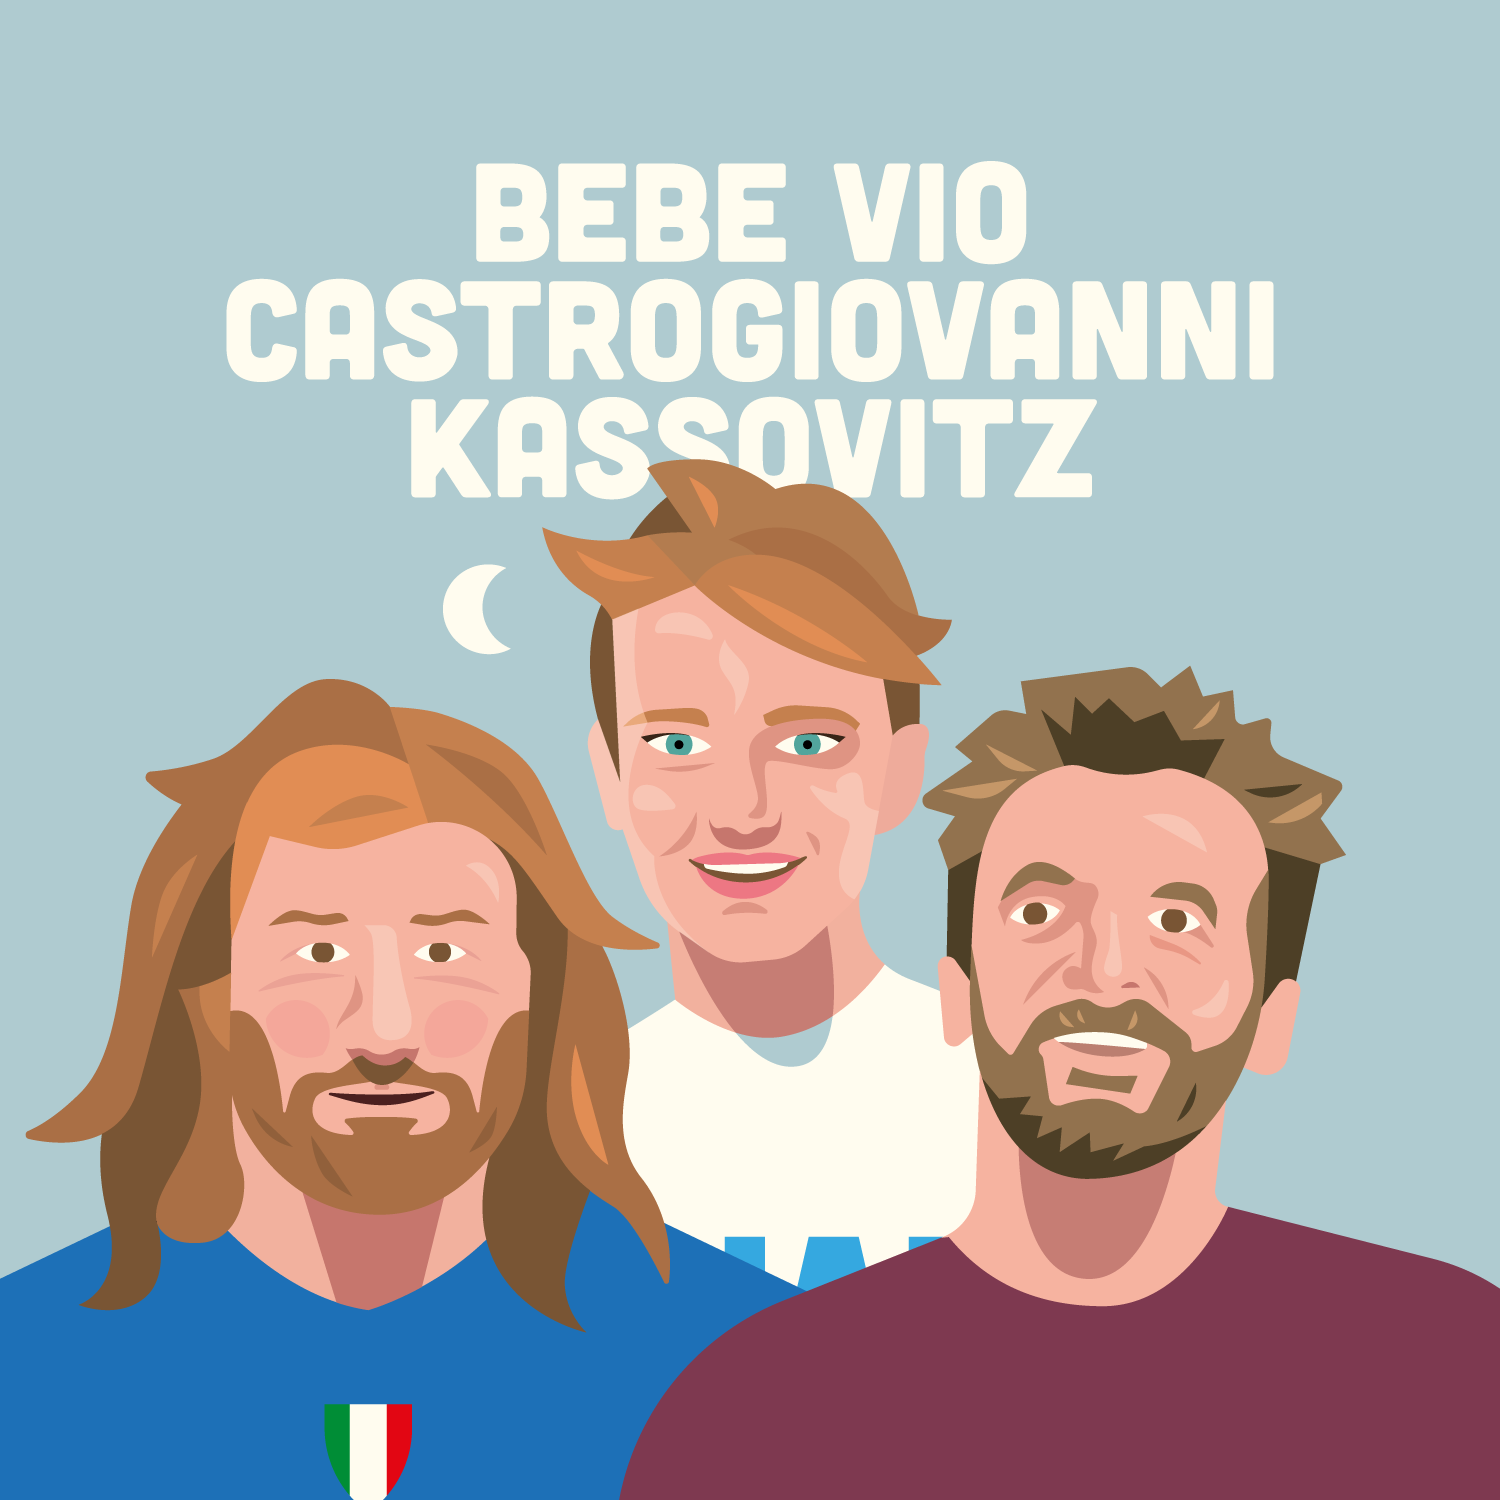 Bebe Vio Castrogiovanni Kassovitz